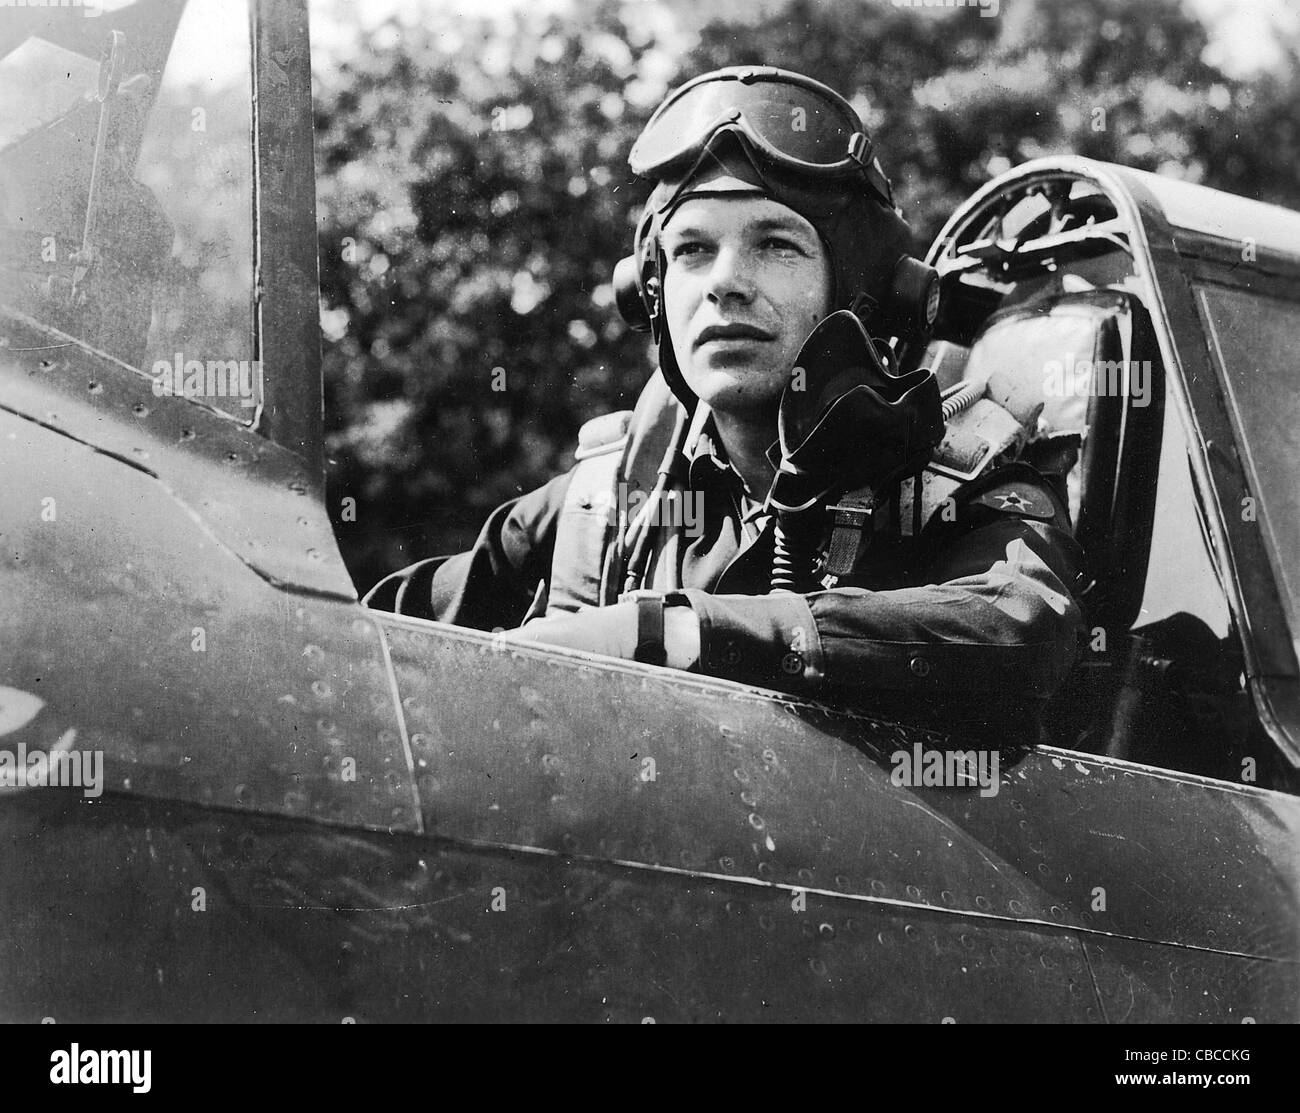 P47 Thunderbolt pilote de l'USAAF se trouve dans son habitacle de l'avion pendant le WW11 Banque D'Images